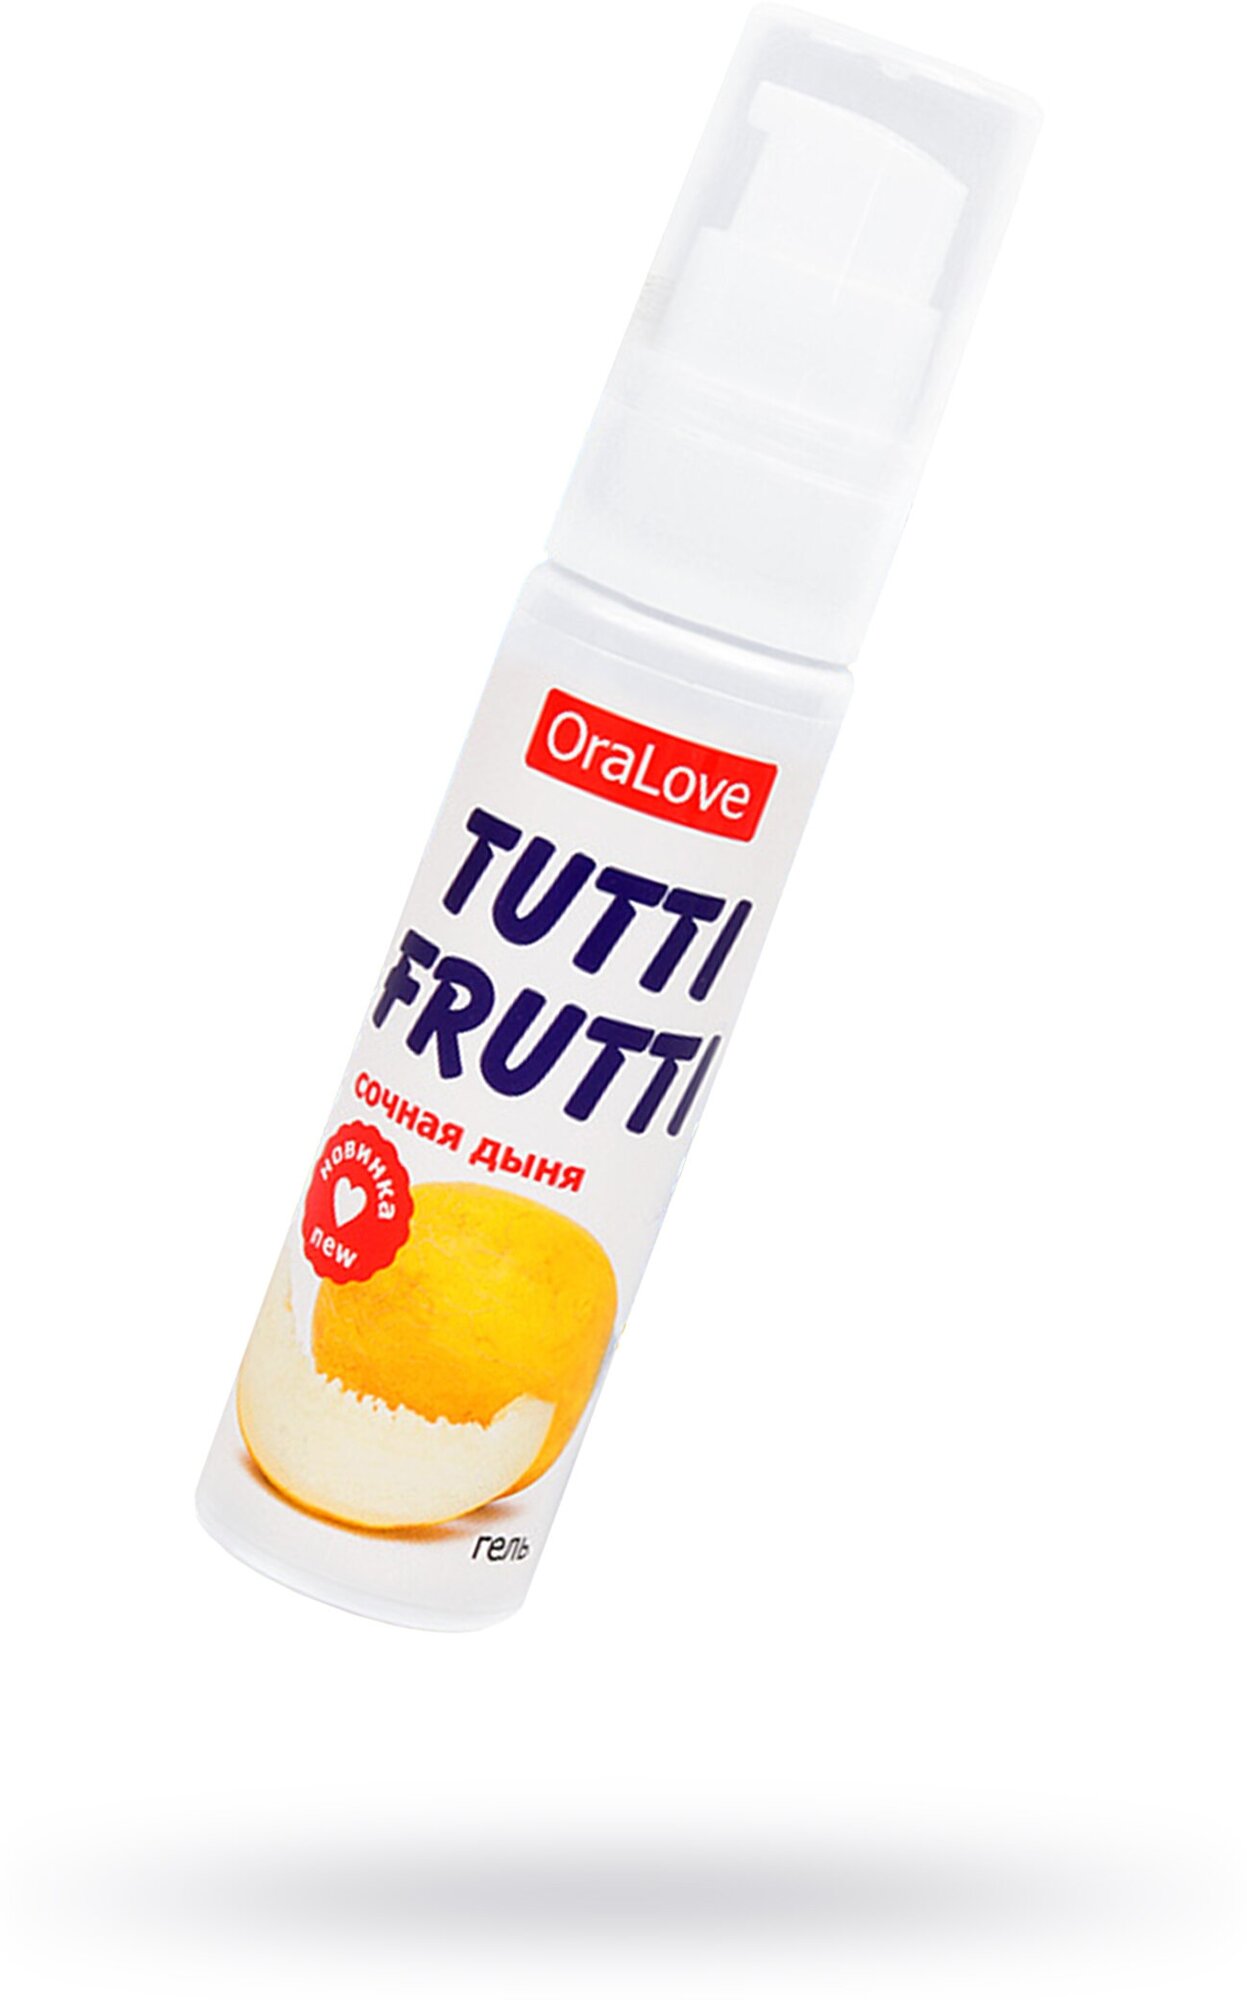 Съедобная гель-смазка Tutti-Frutti сочная дыня 30 г